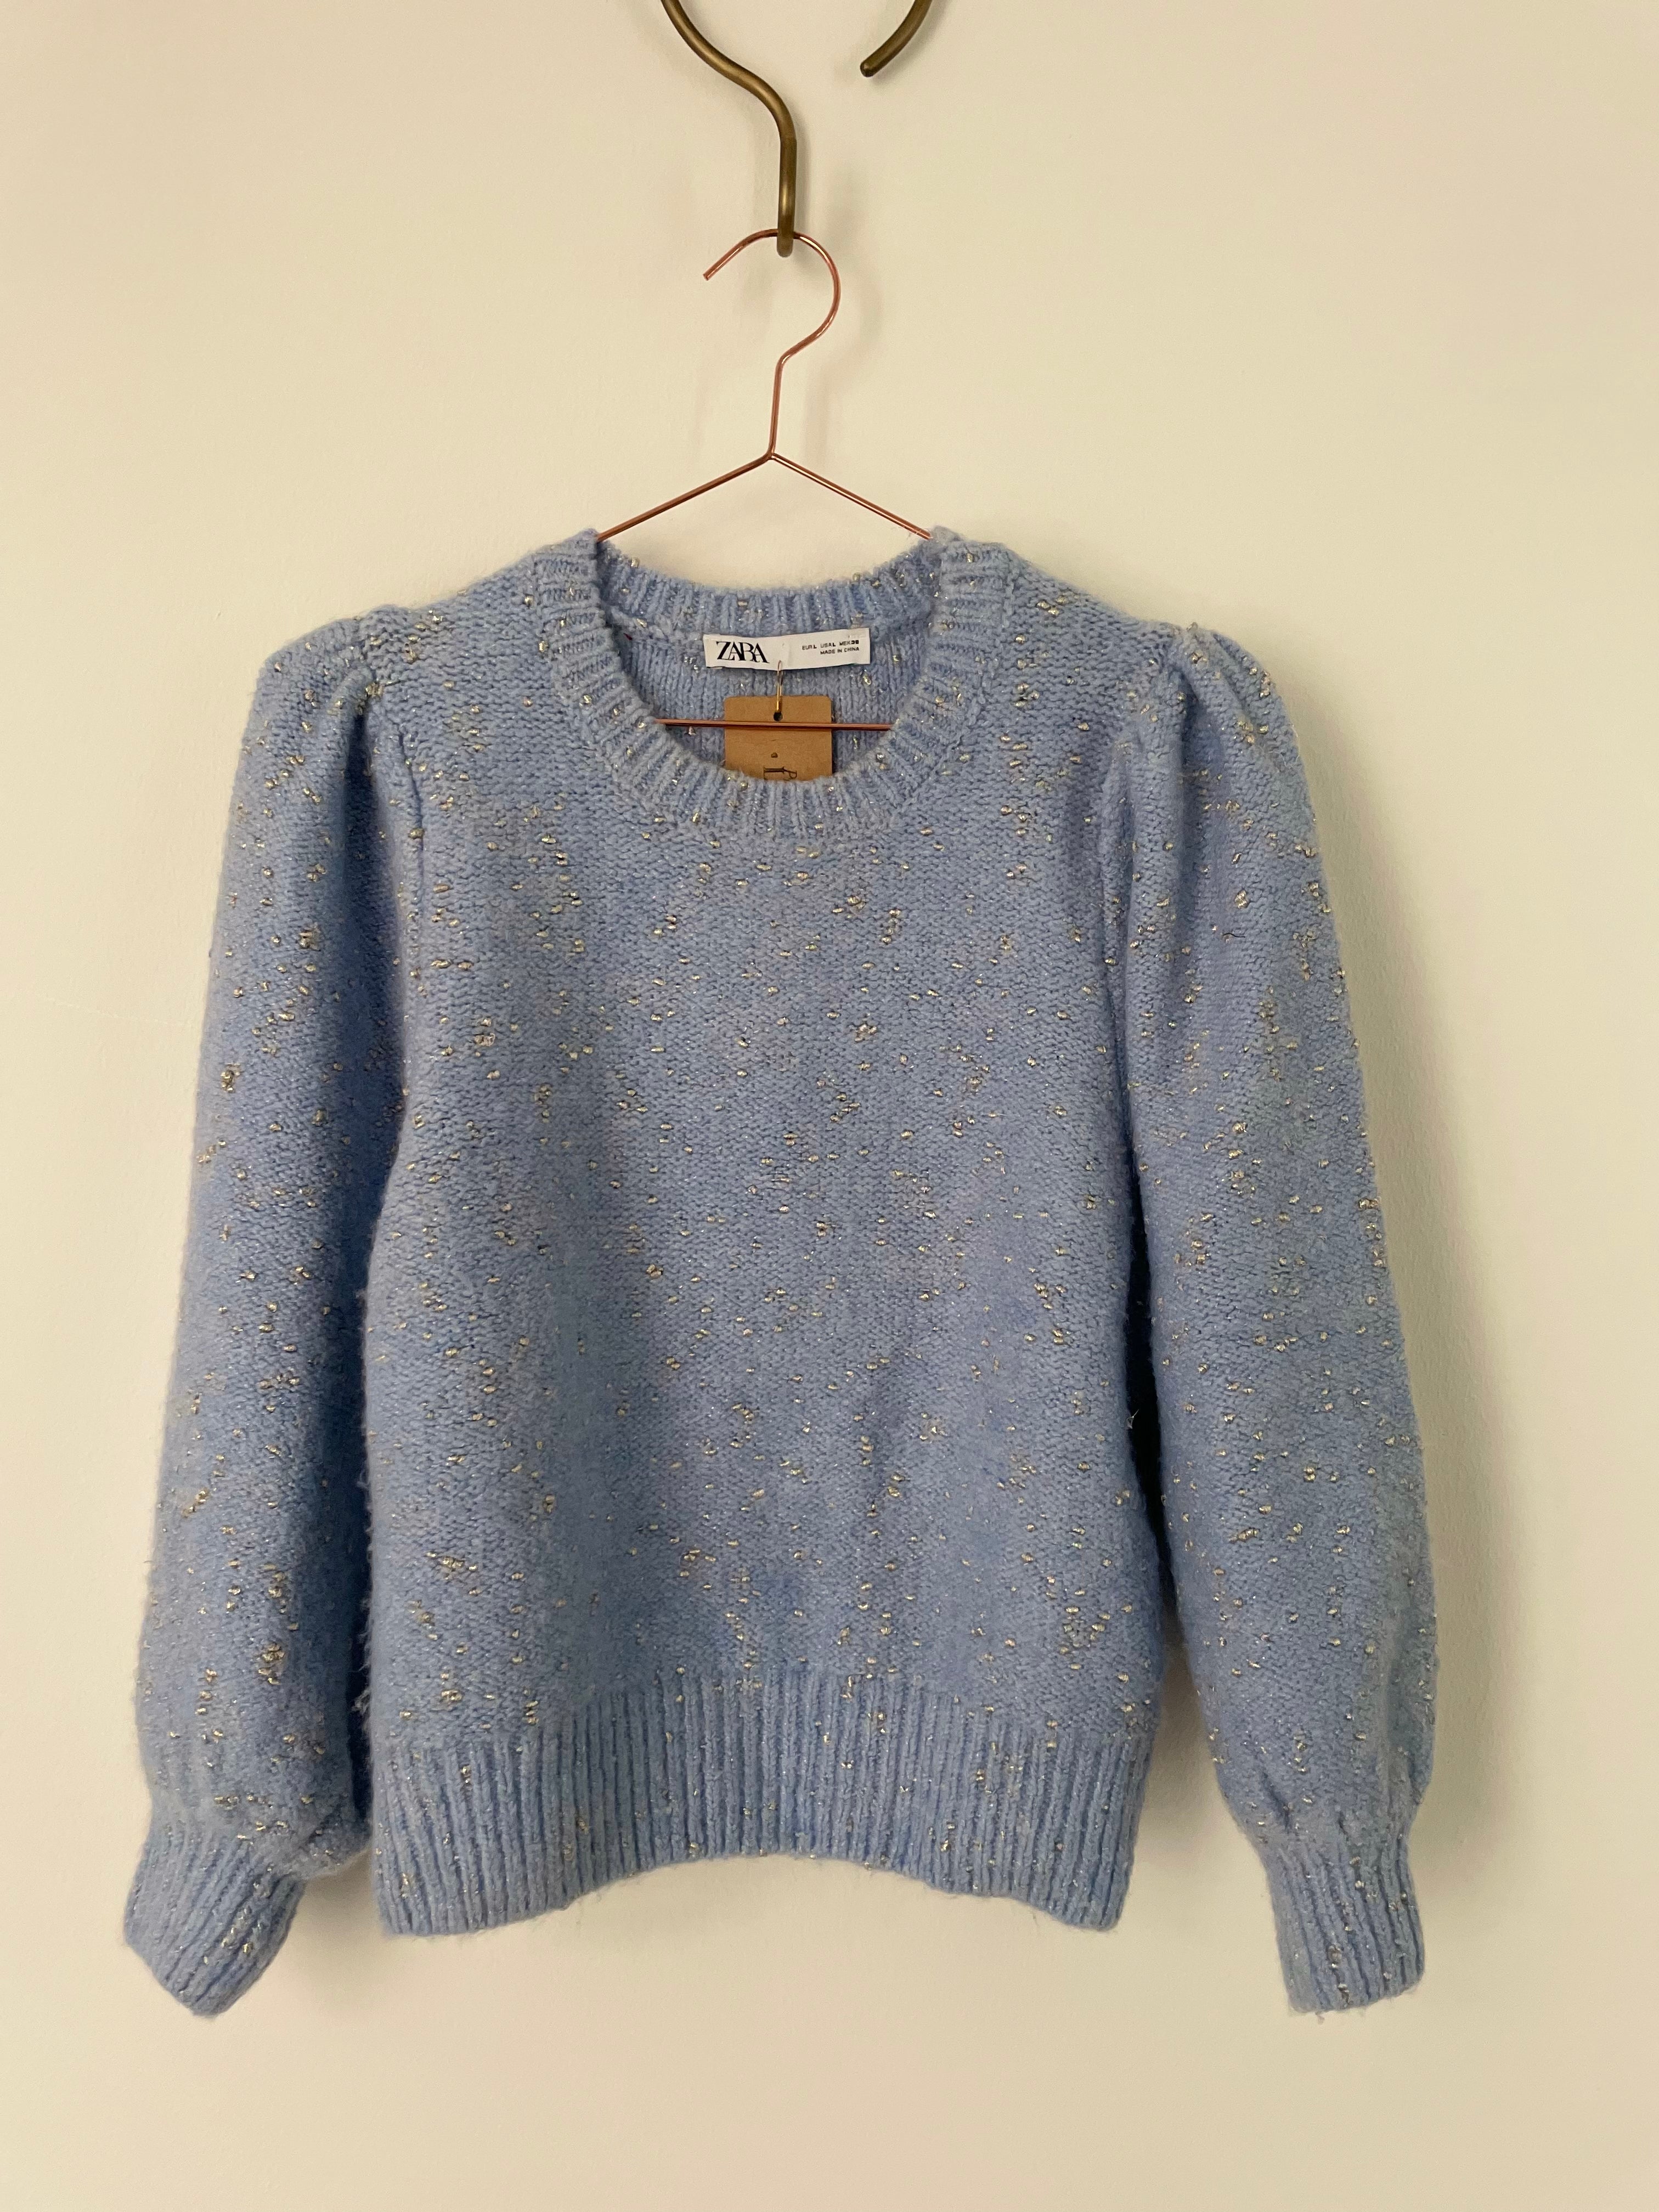 Blue & metallic knit jumper - ZARA - L